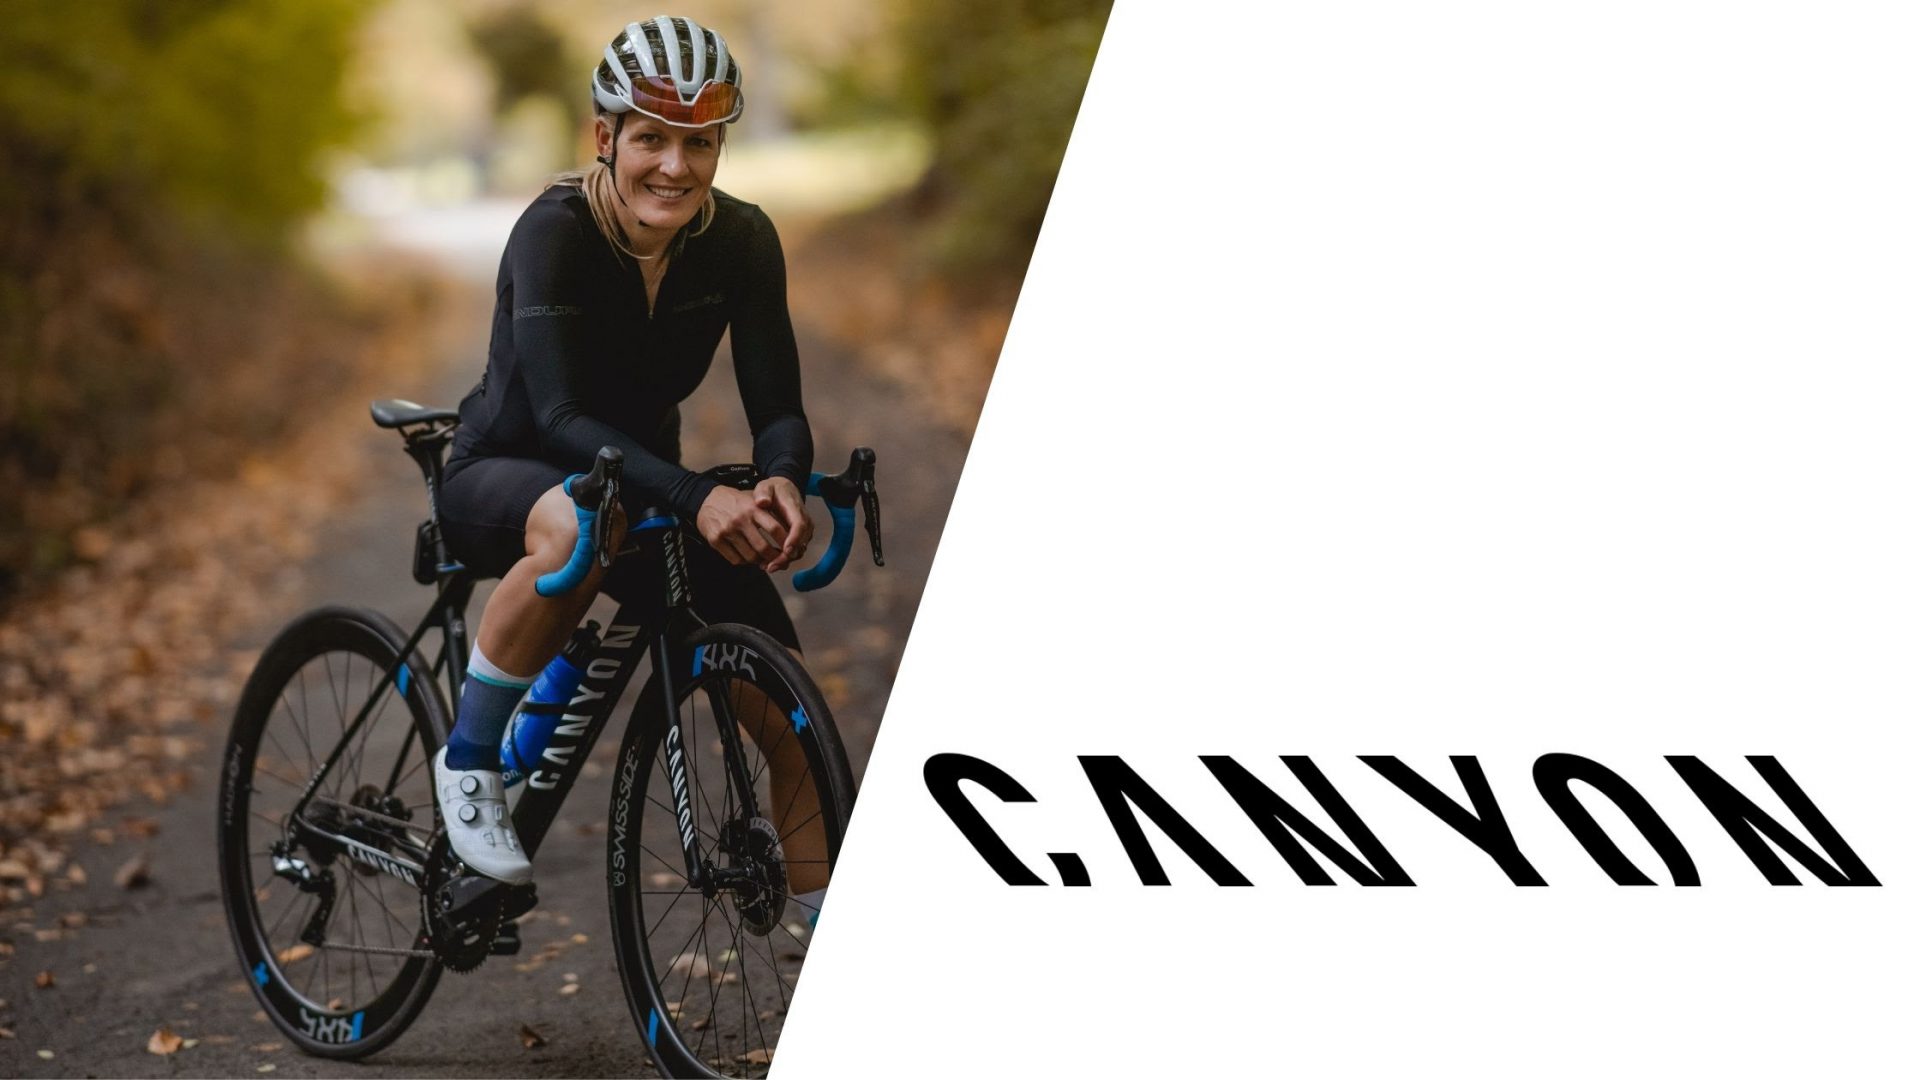 Canyon bleibt exklusiver Bike-Partner von Daniela Bleymehl